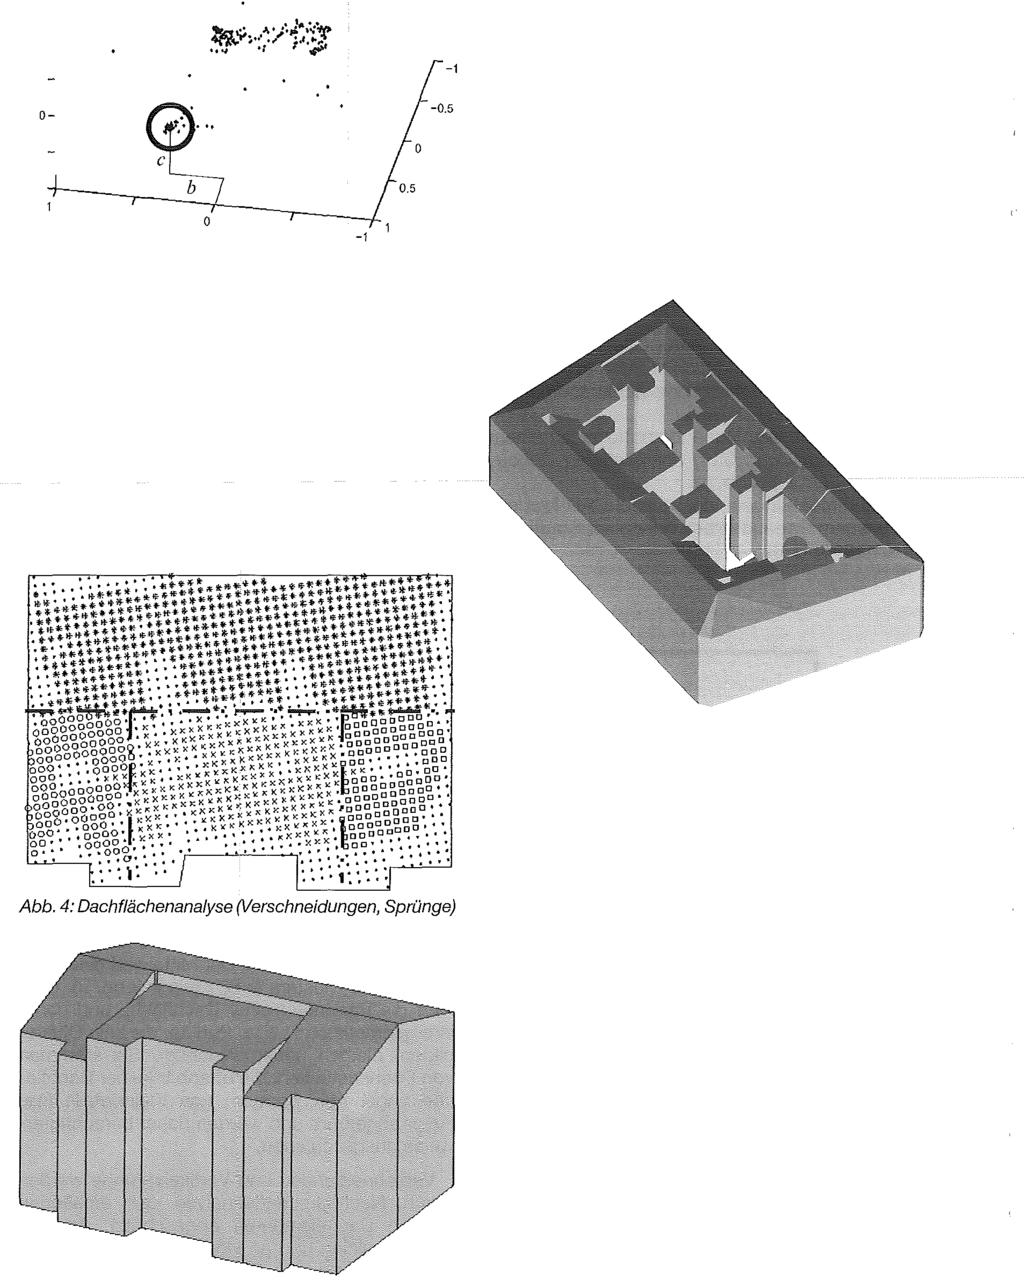 10-10 > -20 --- (/ 05 ' -;; :r",,,,, " tj > ';: : ;t >' ::" 'ff: : / j ',: -05-1 Abb 3: Parameterraum zum Auffinden der Dachflächen Die Rekonstruktionseinheit ist das Einzelgebäude (Abb 5), welches